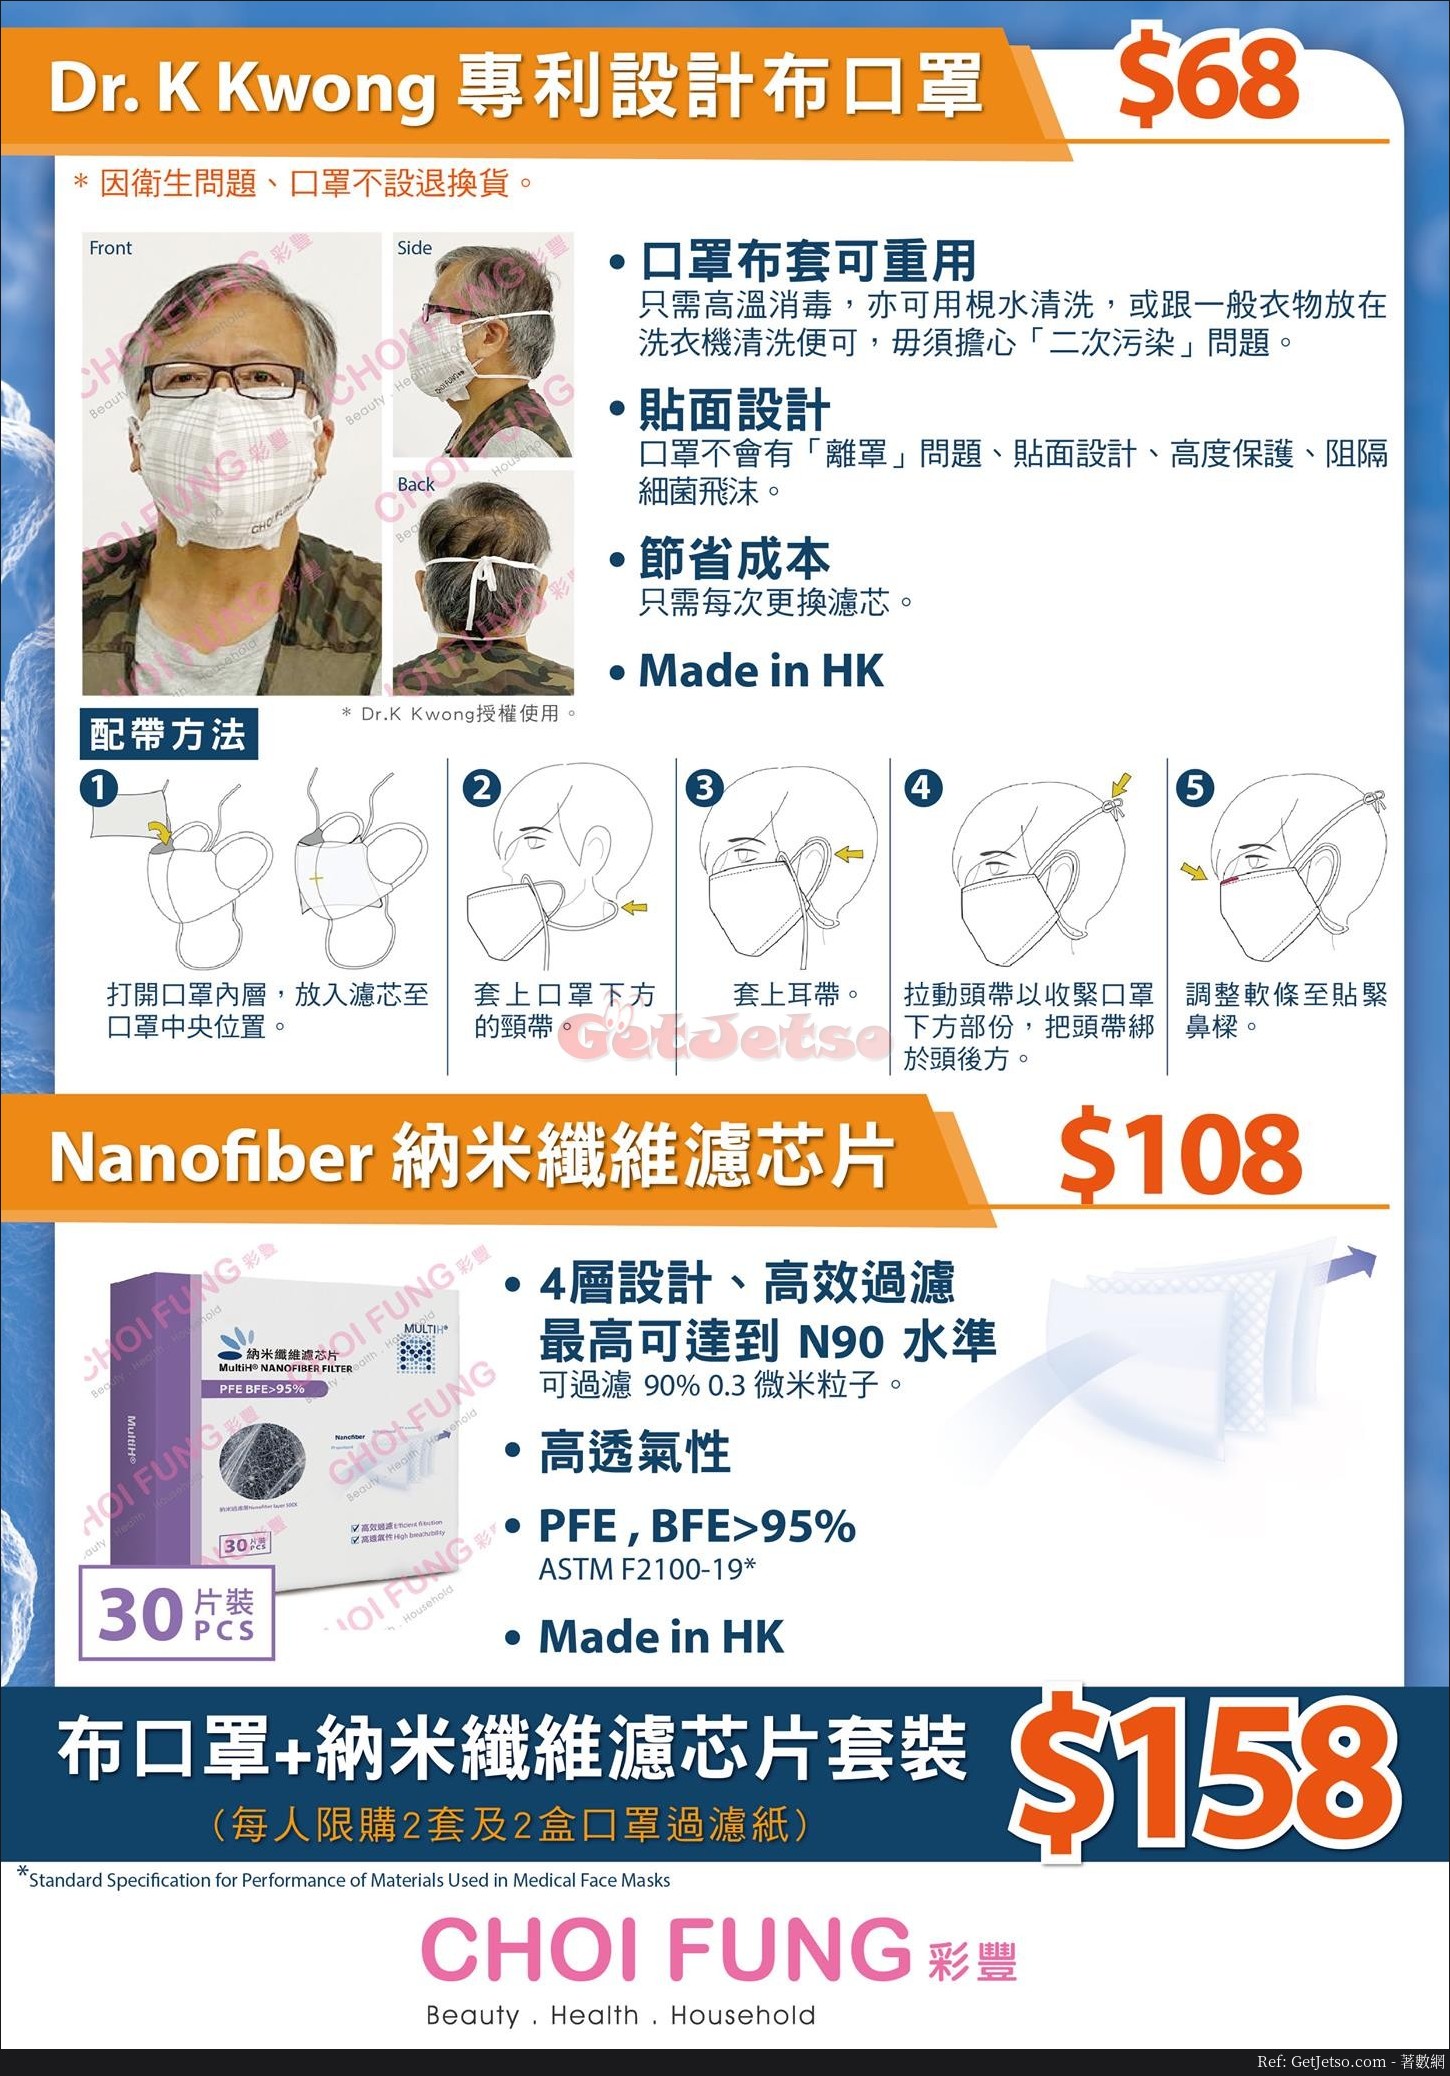 彩豐行4月4日發售Dr.K Kwong專利設計布口罩圖片1